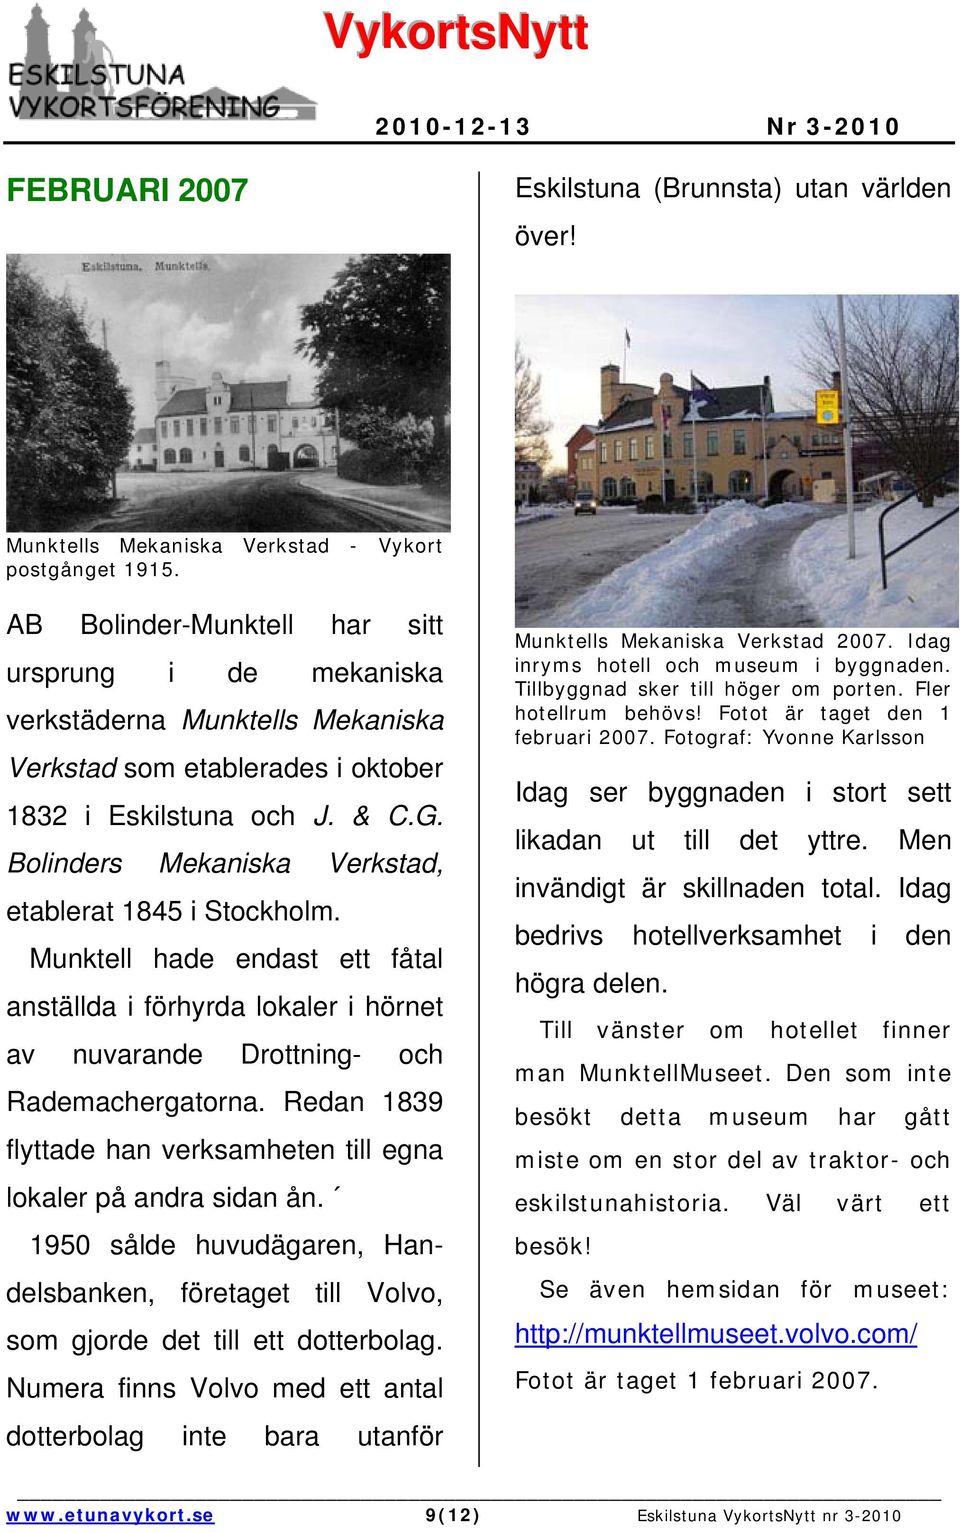 Bolinders Mekaniska Verkstad, etablerat 1845 i Stockholm. Munktell hade endast ett fåtal anställda i förhyrda lokaler i hörnet av nuvarande Drottning- och Rademachergatorna.